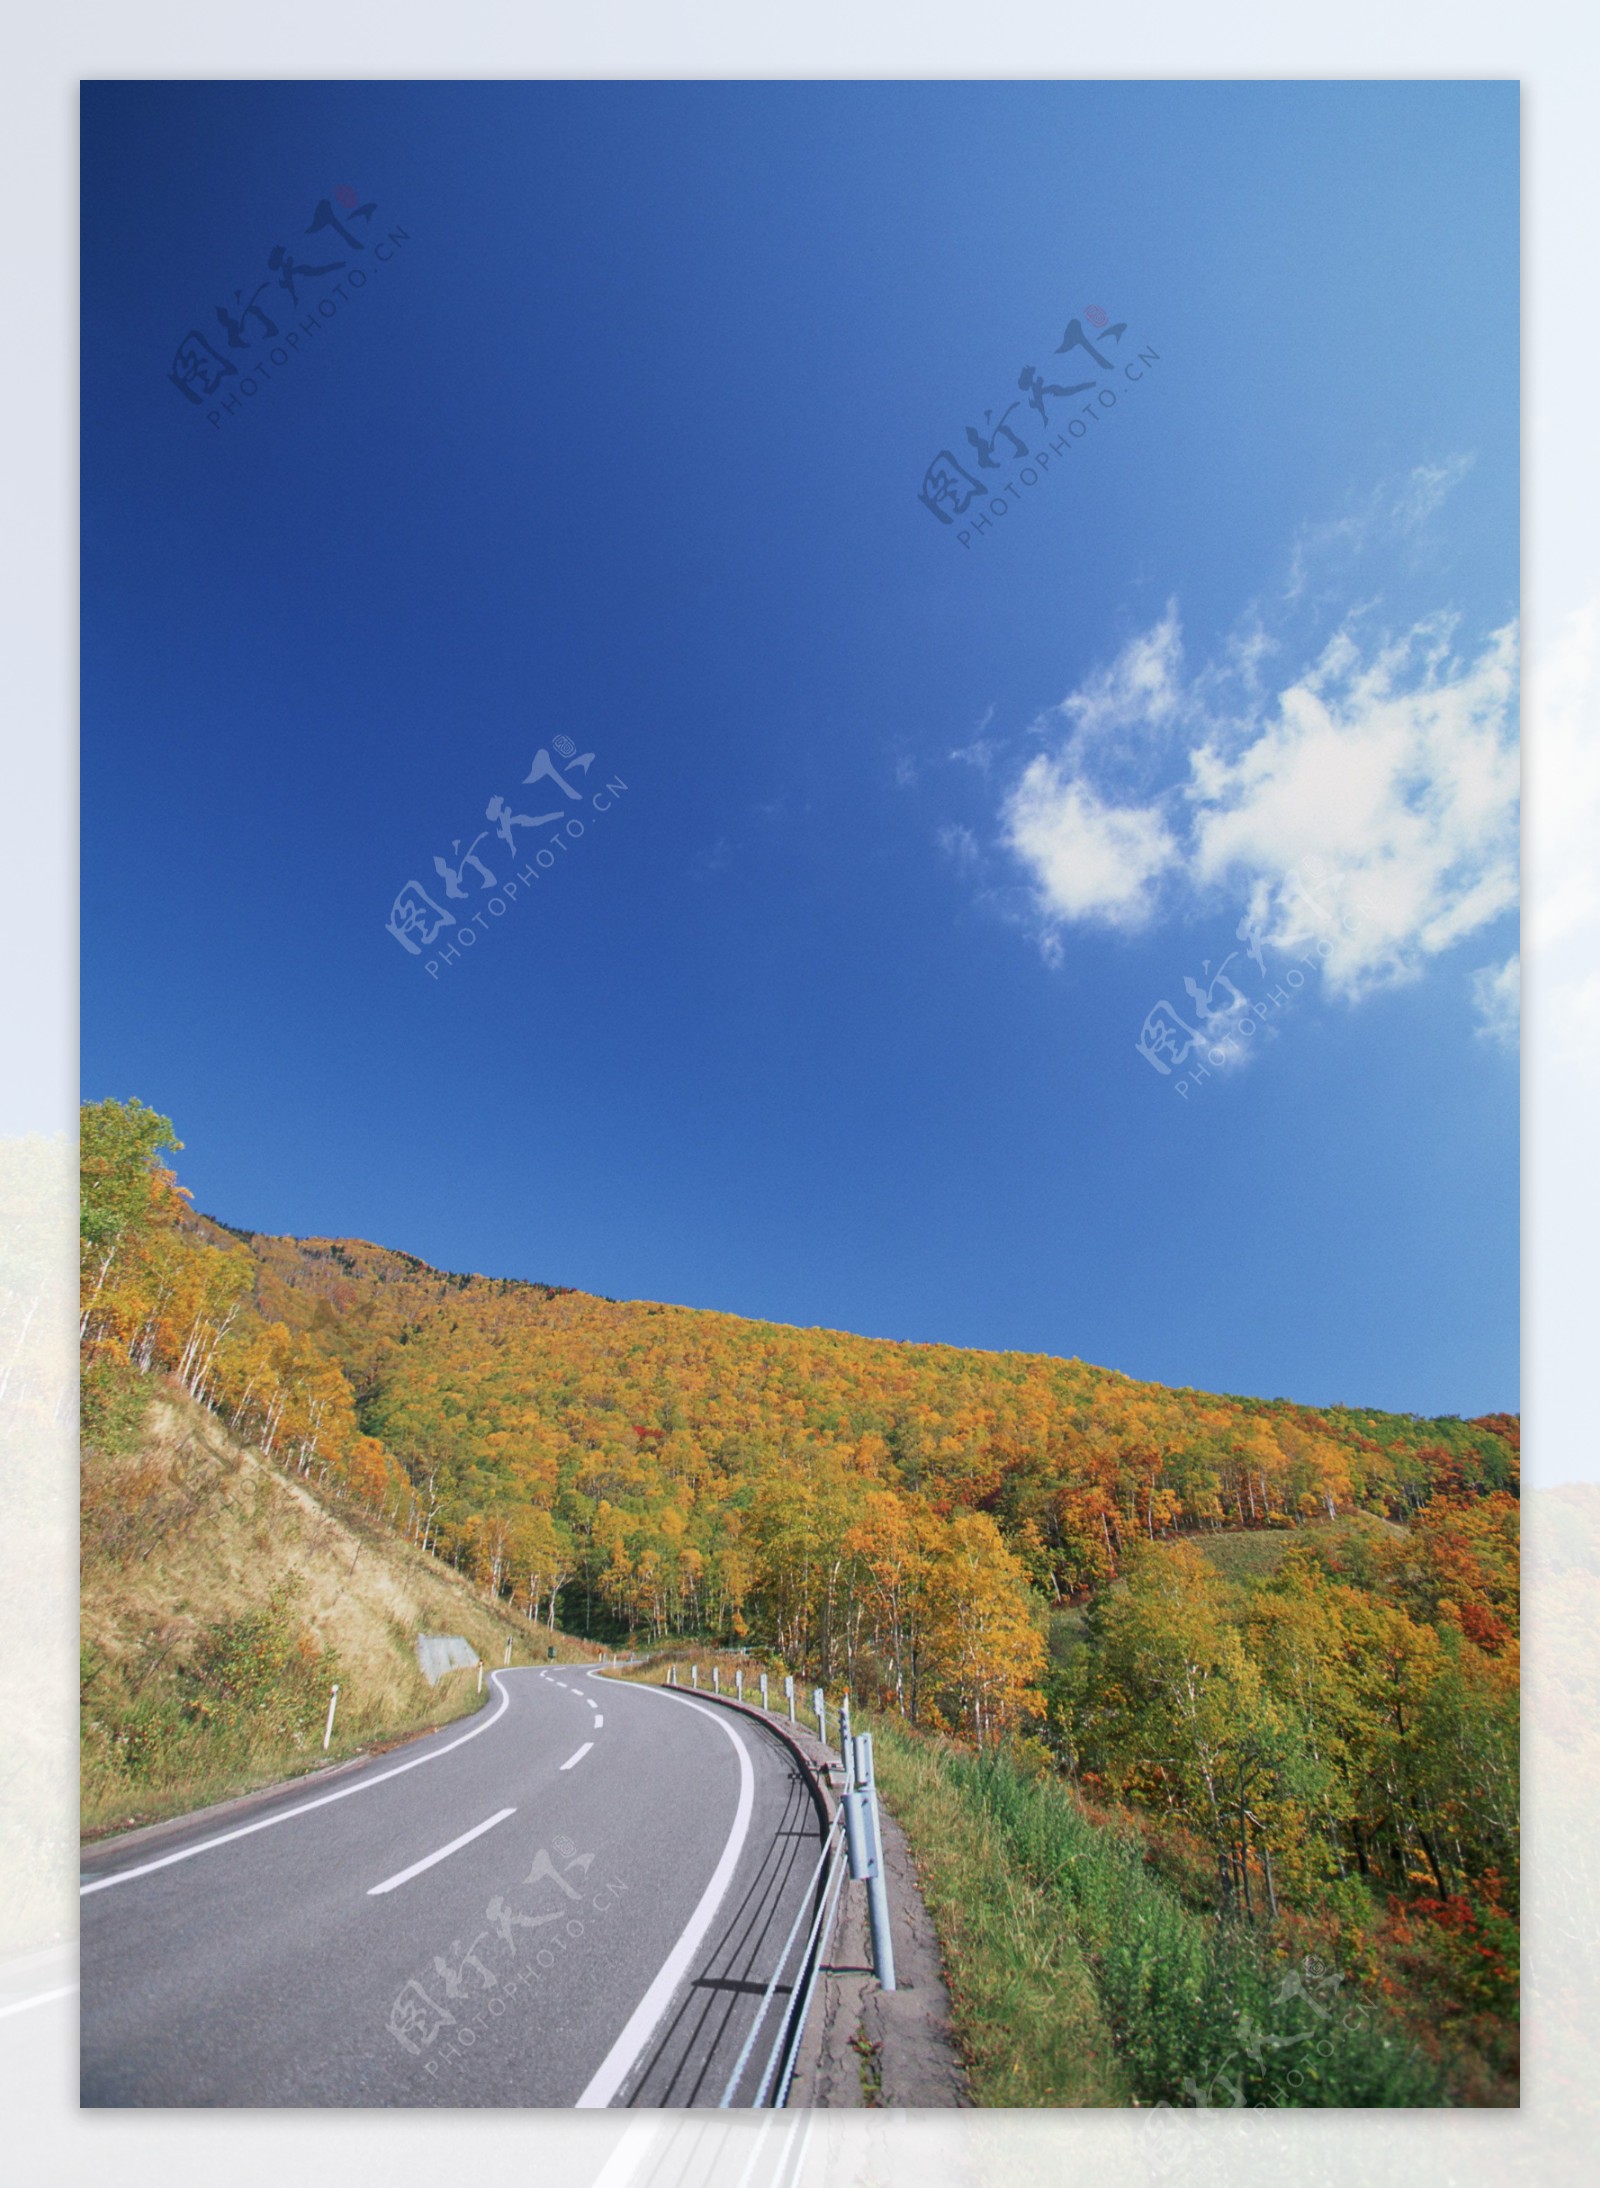 黑白道路和阴影区域交通 库存照片. 图片 包括有 安全性, 阳光, 颜色, 路径, 剪影, 边路, 街道 - 208925210